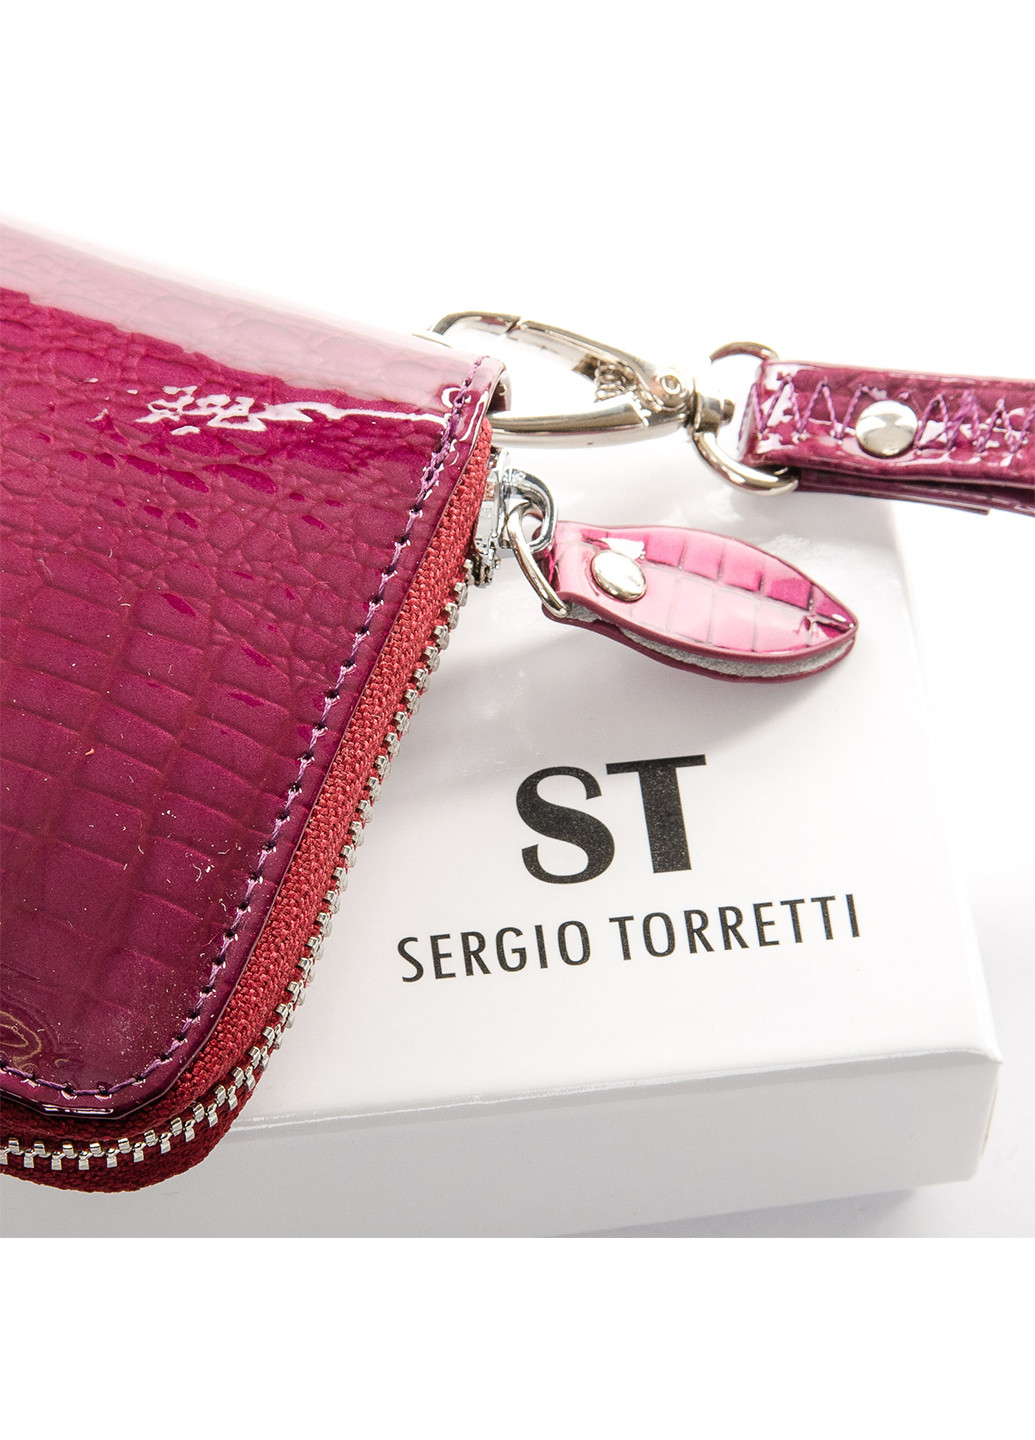 Кошелек женский кожаный на молнии Sergio Torretti w38 (266553528)